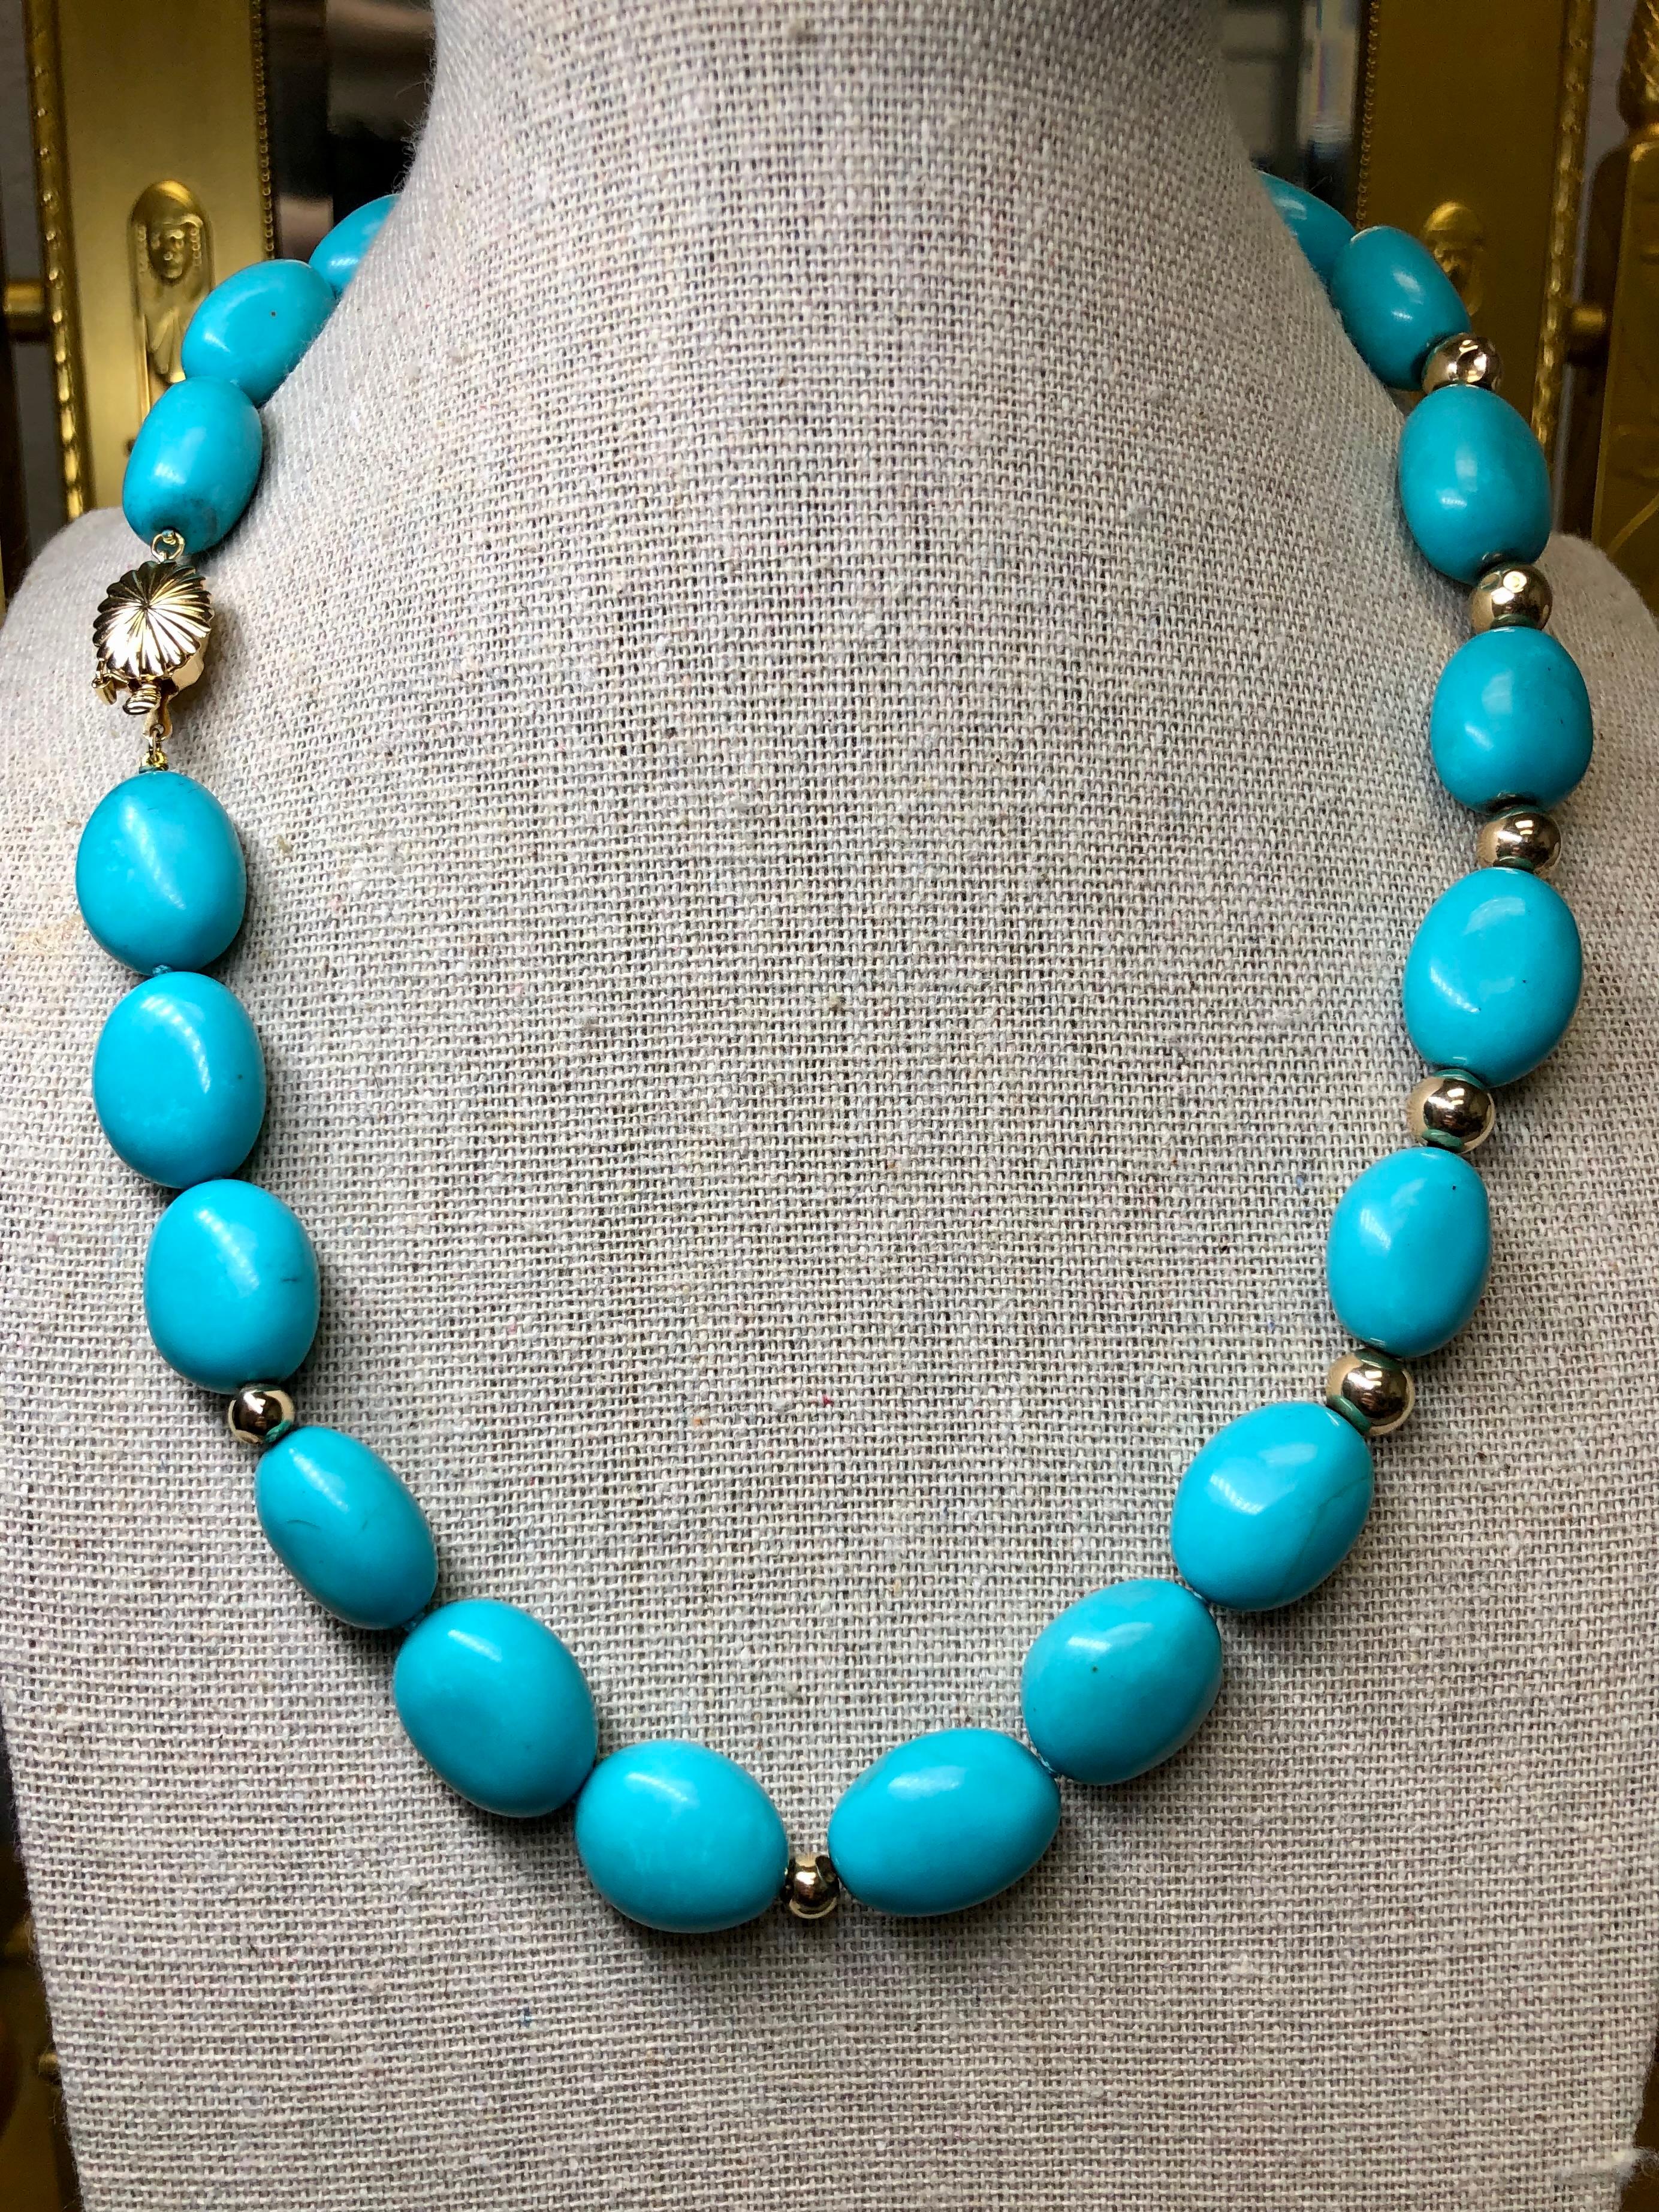 
Un magnifique collier de turquoise composé de 22 pierres de turquoise polies séparées par des anneaux de 14 carats avec un fermoir de 14 carats. Belle couleur.


Dimensions/Poids :

Le collier mesure 18